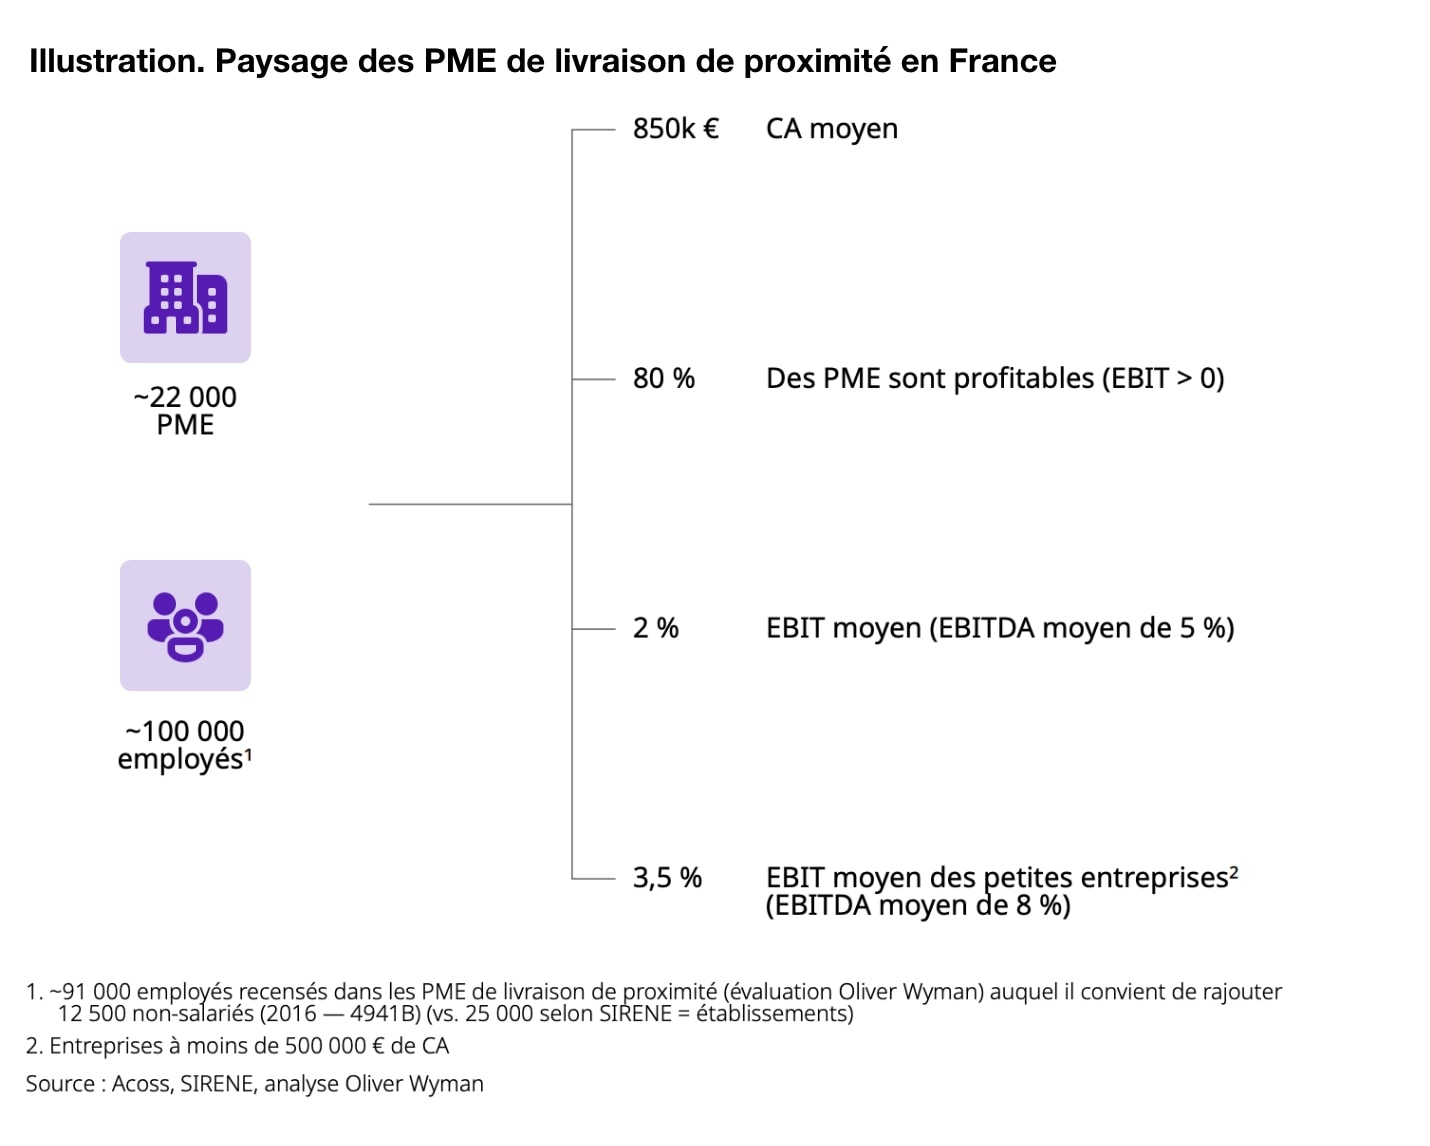 Le paysage des PME de livraison de proximité en France